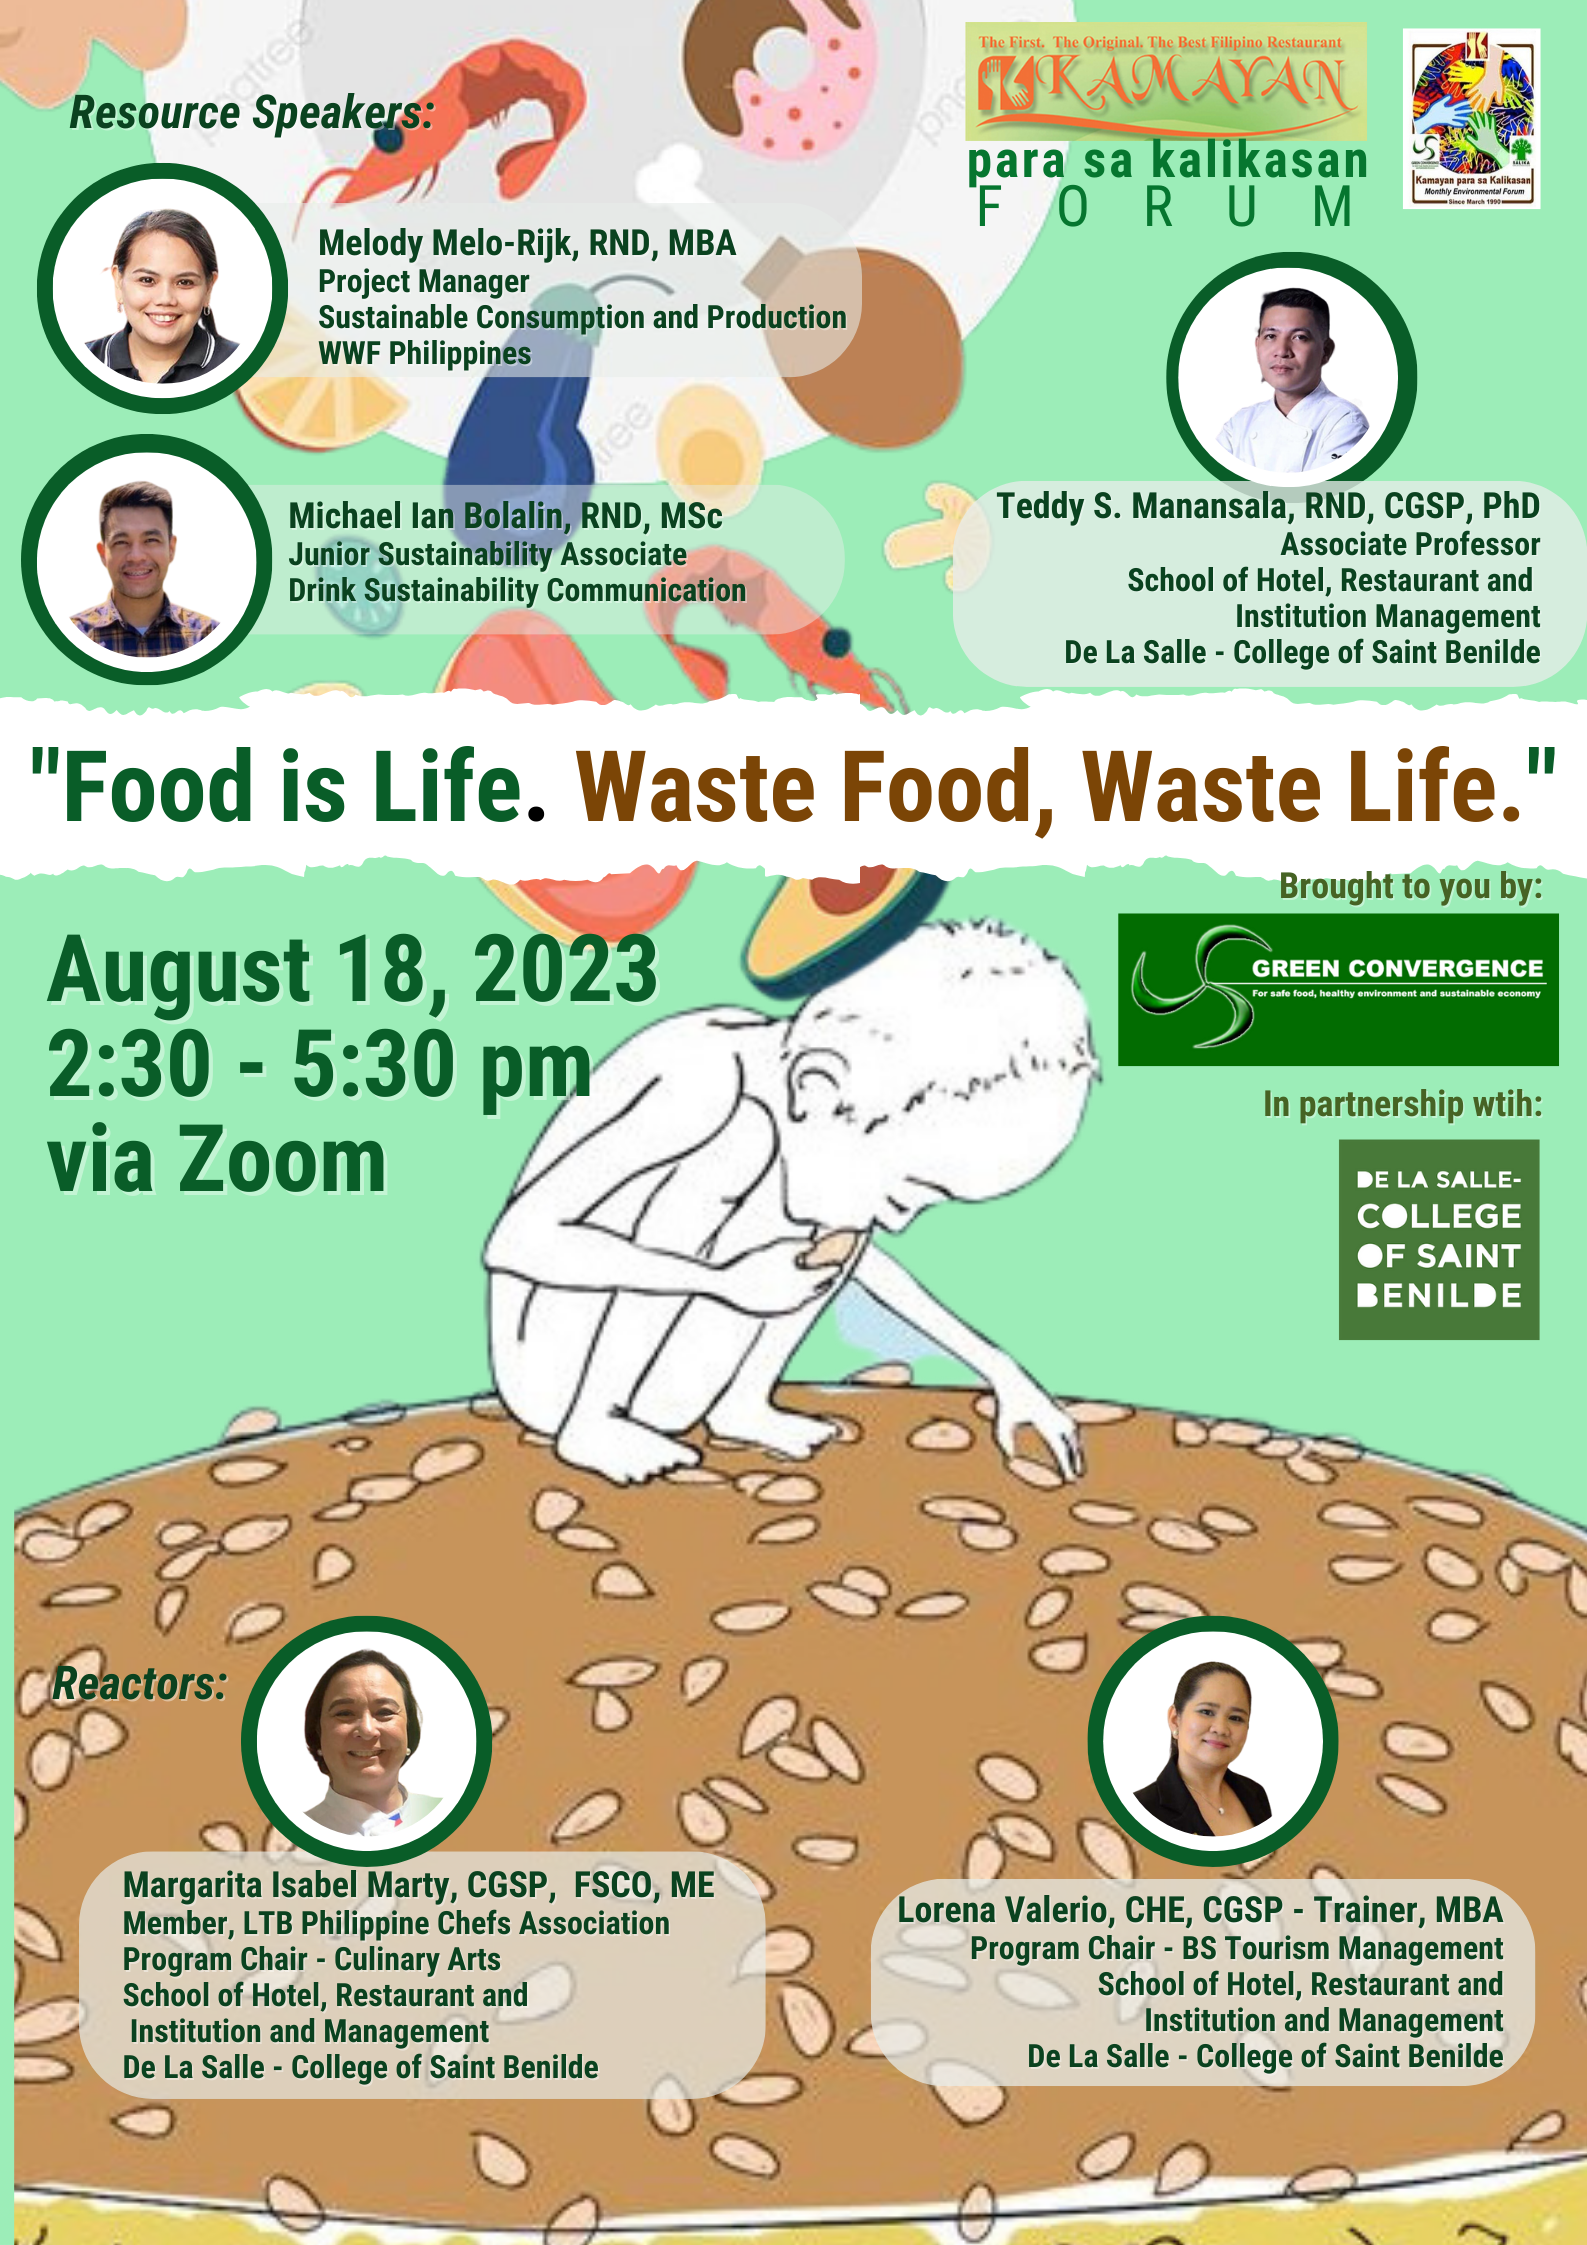 Food is Life. Waste Food, Waste Life.